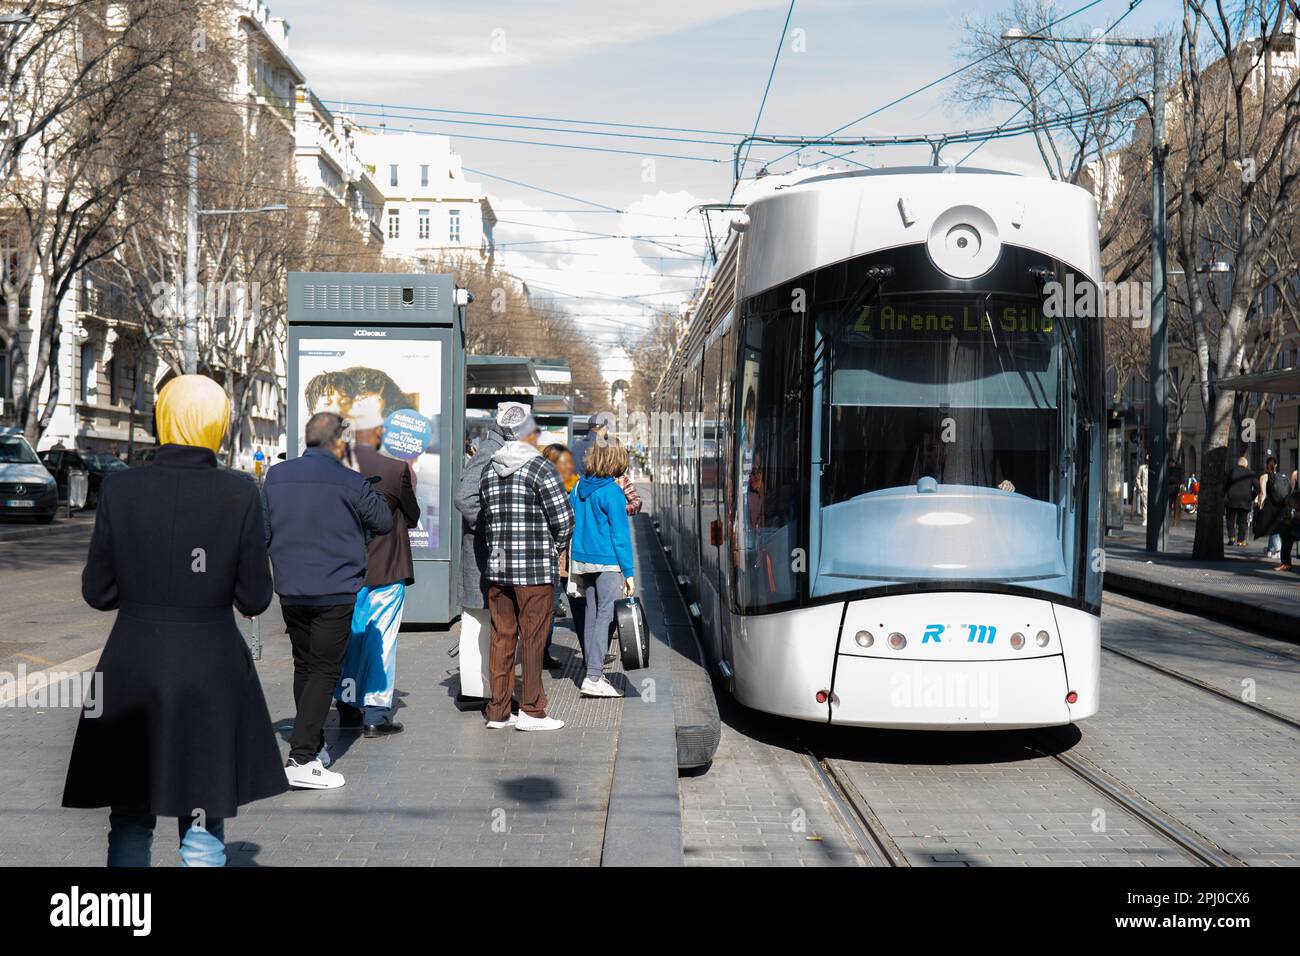 Le Tramway de Marseille est un symbole emblématique de la ville phocéenne, Offrant aux habitants et aux visiteurs un moyen agréable de déplacement. Stockfoto